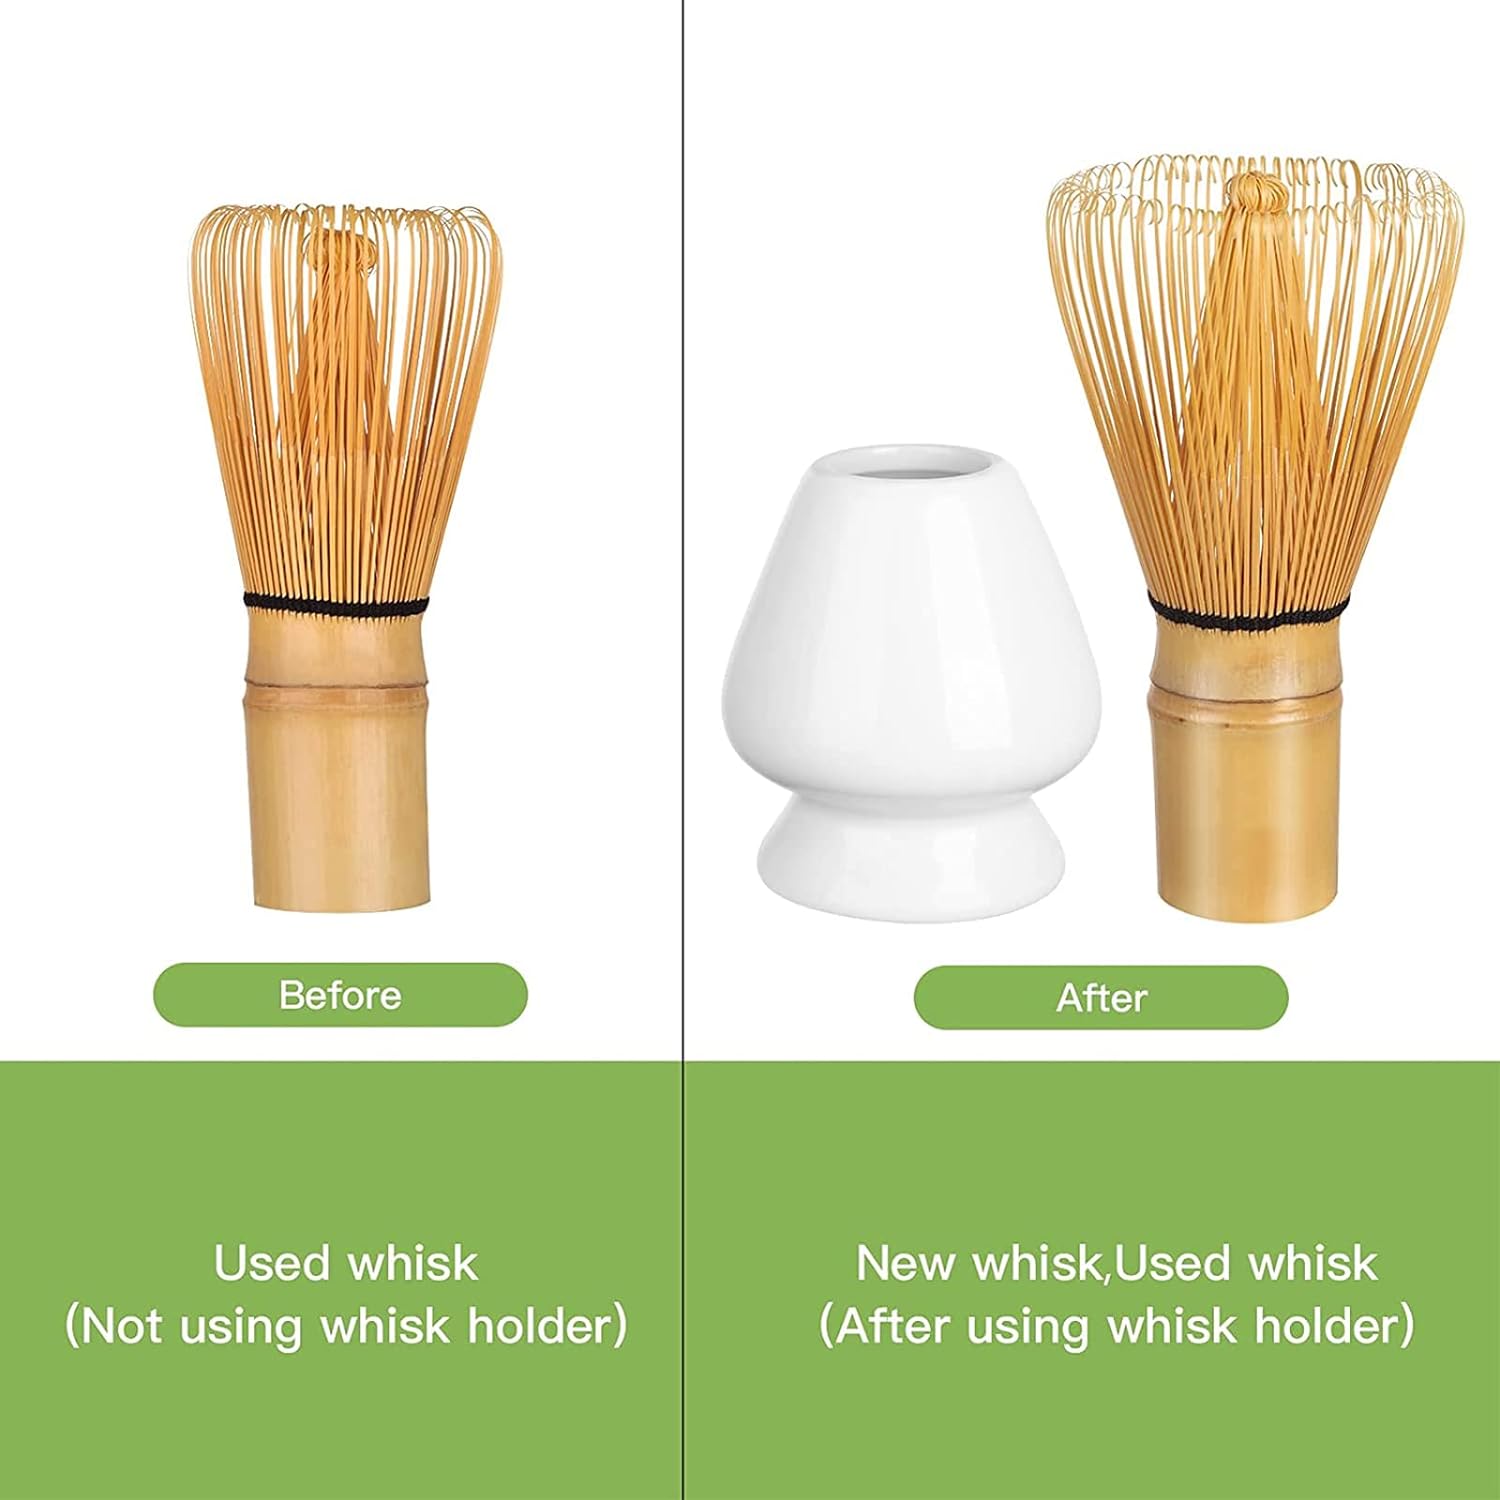 Bamboo Matcha Whisk Set - White